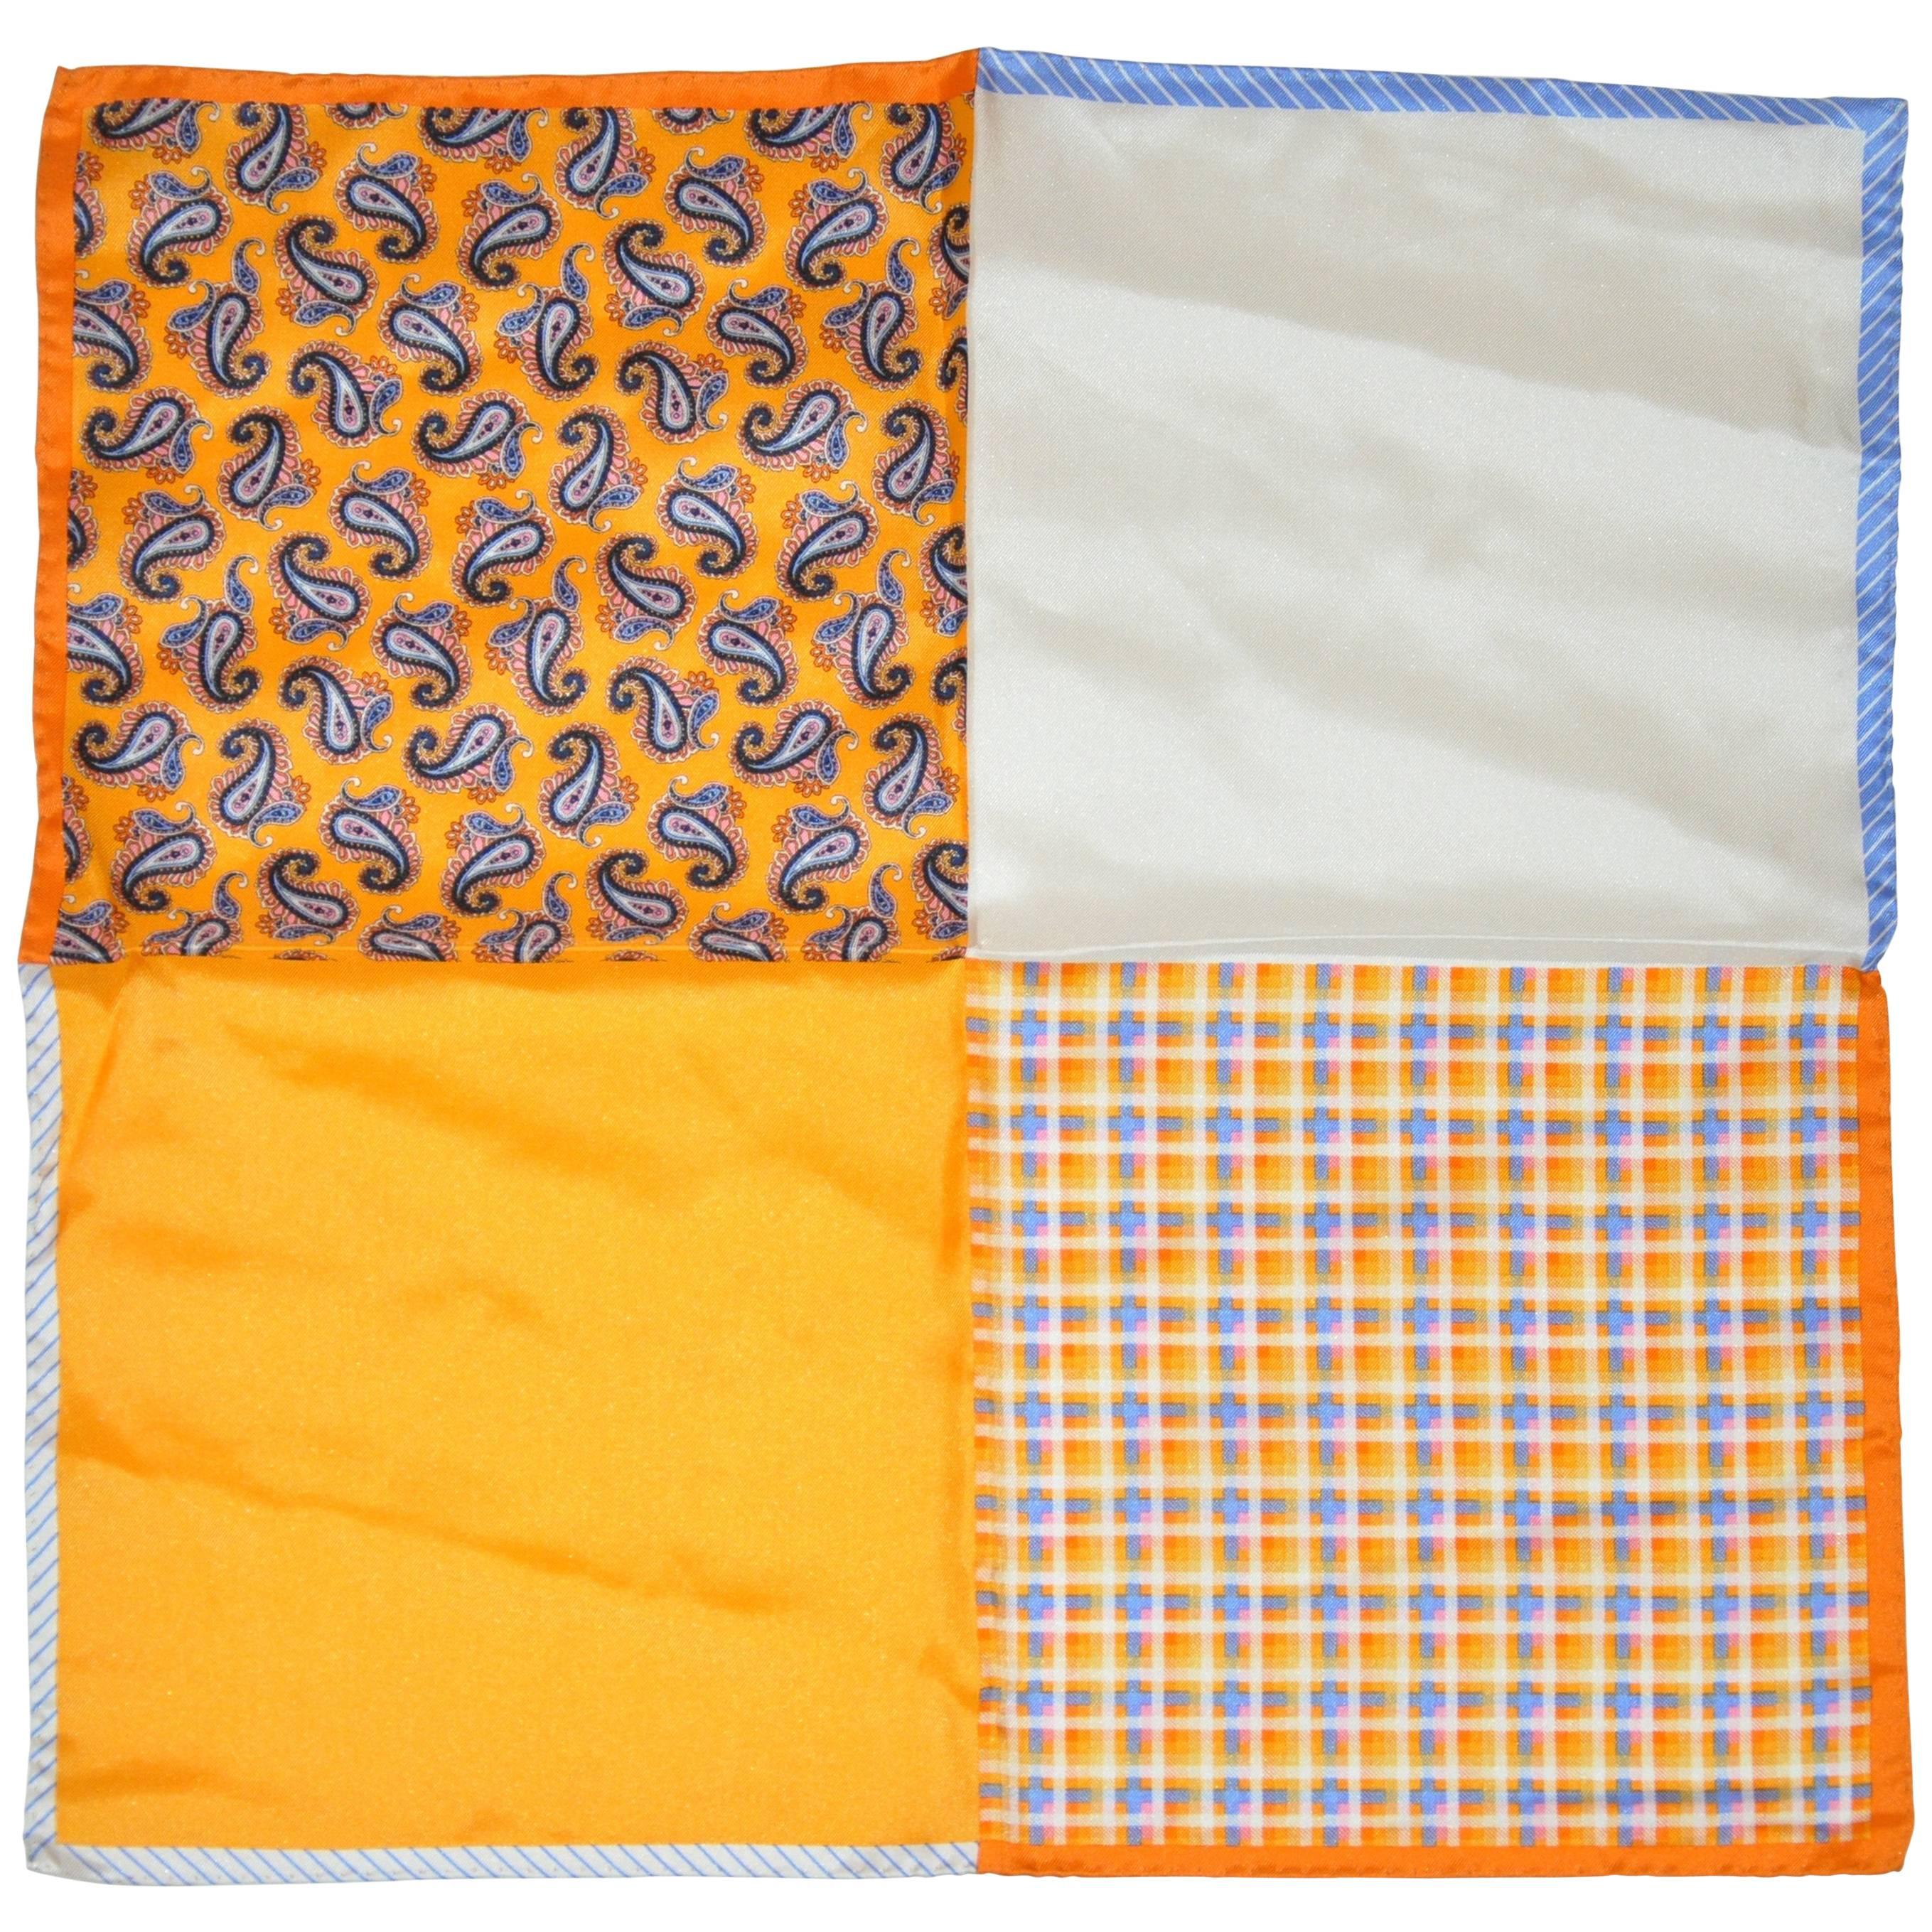 Handtaschentuch aus Seide mit Paisleymuster, Streifen und Massivsteinen